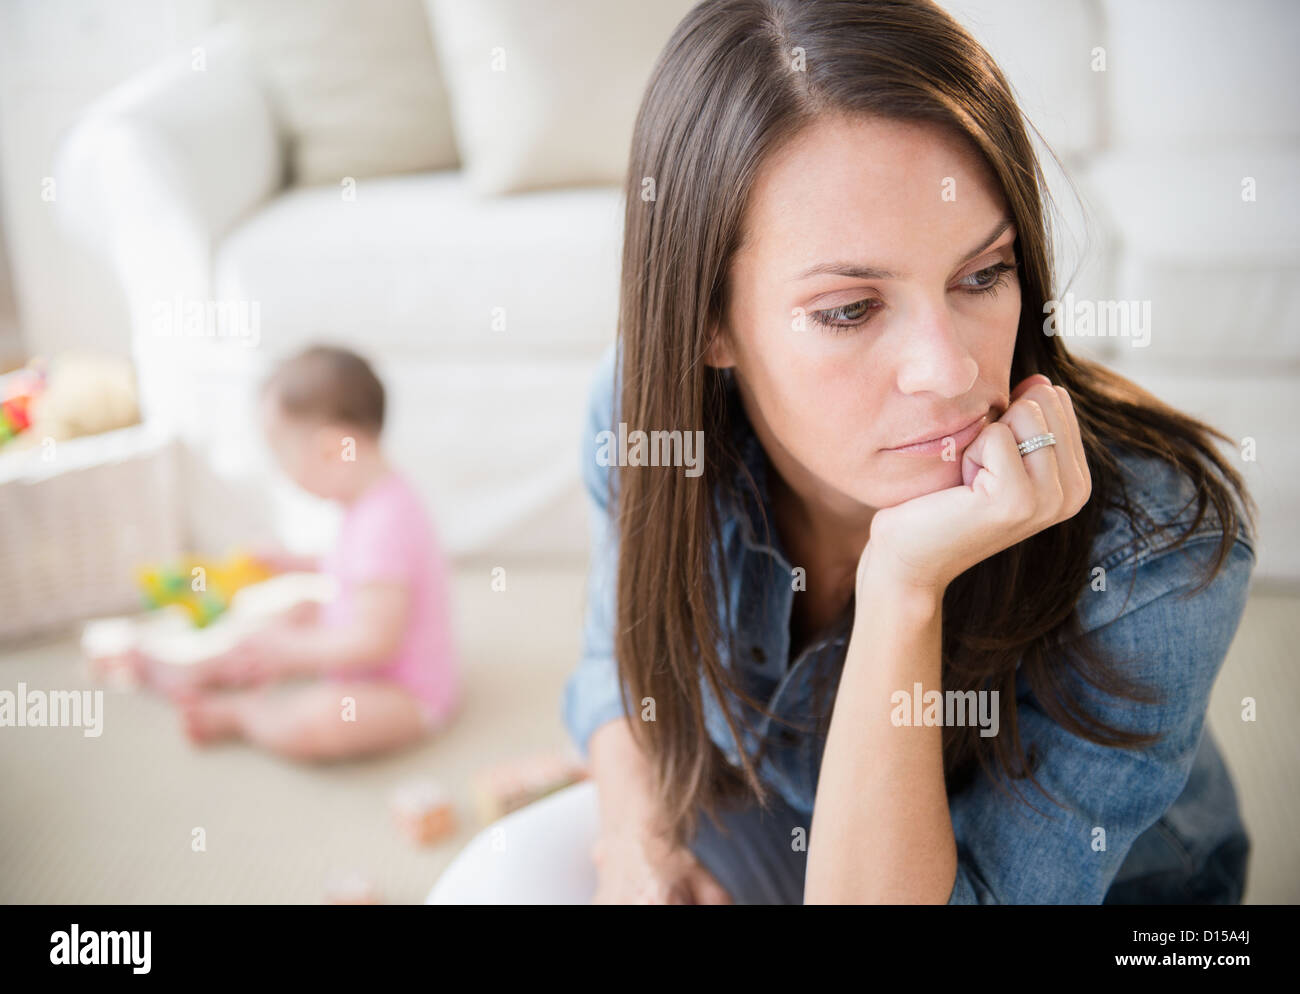 Los Estados Unidos, Nueva Jersey, Jersey City, la madre con su hija (6-11 meses) en la sala de estar Foto de stock